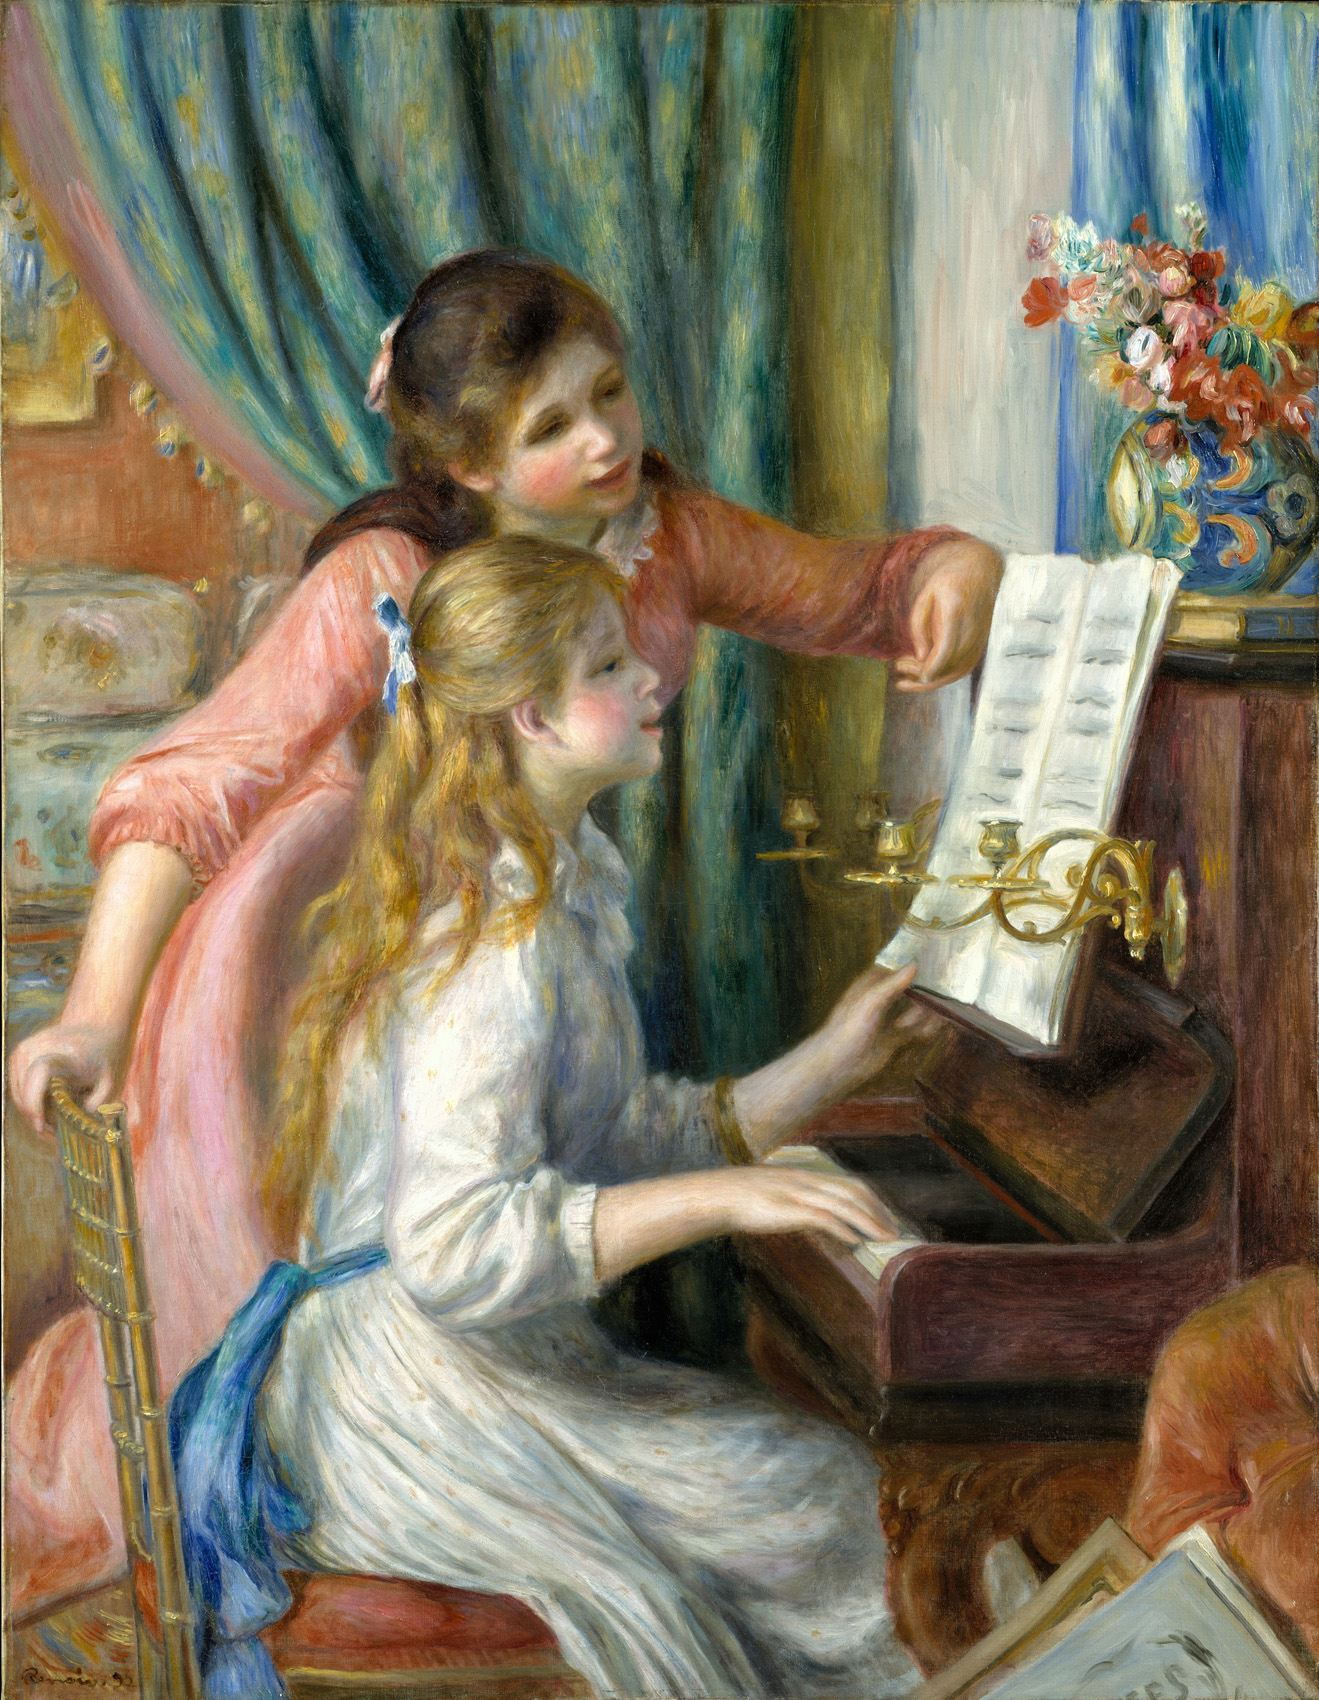 ルノワール作 ピアノを弾く少女たち 楽興の時 と共に クラシック音楽とアート